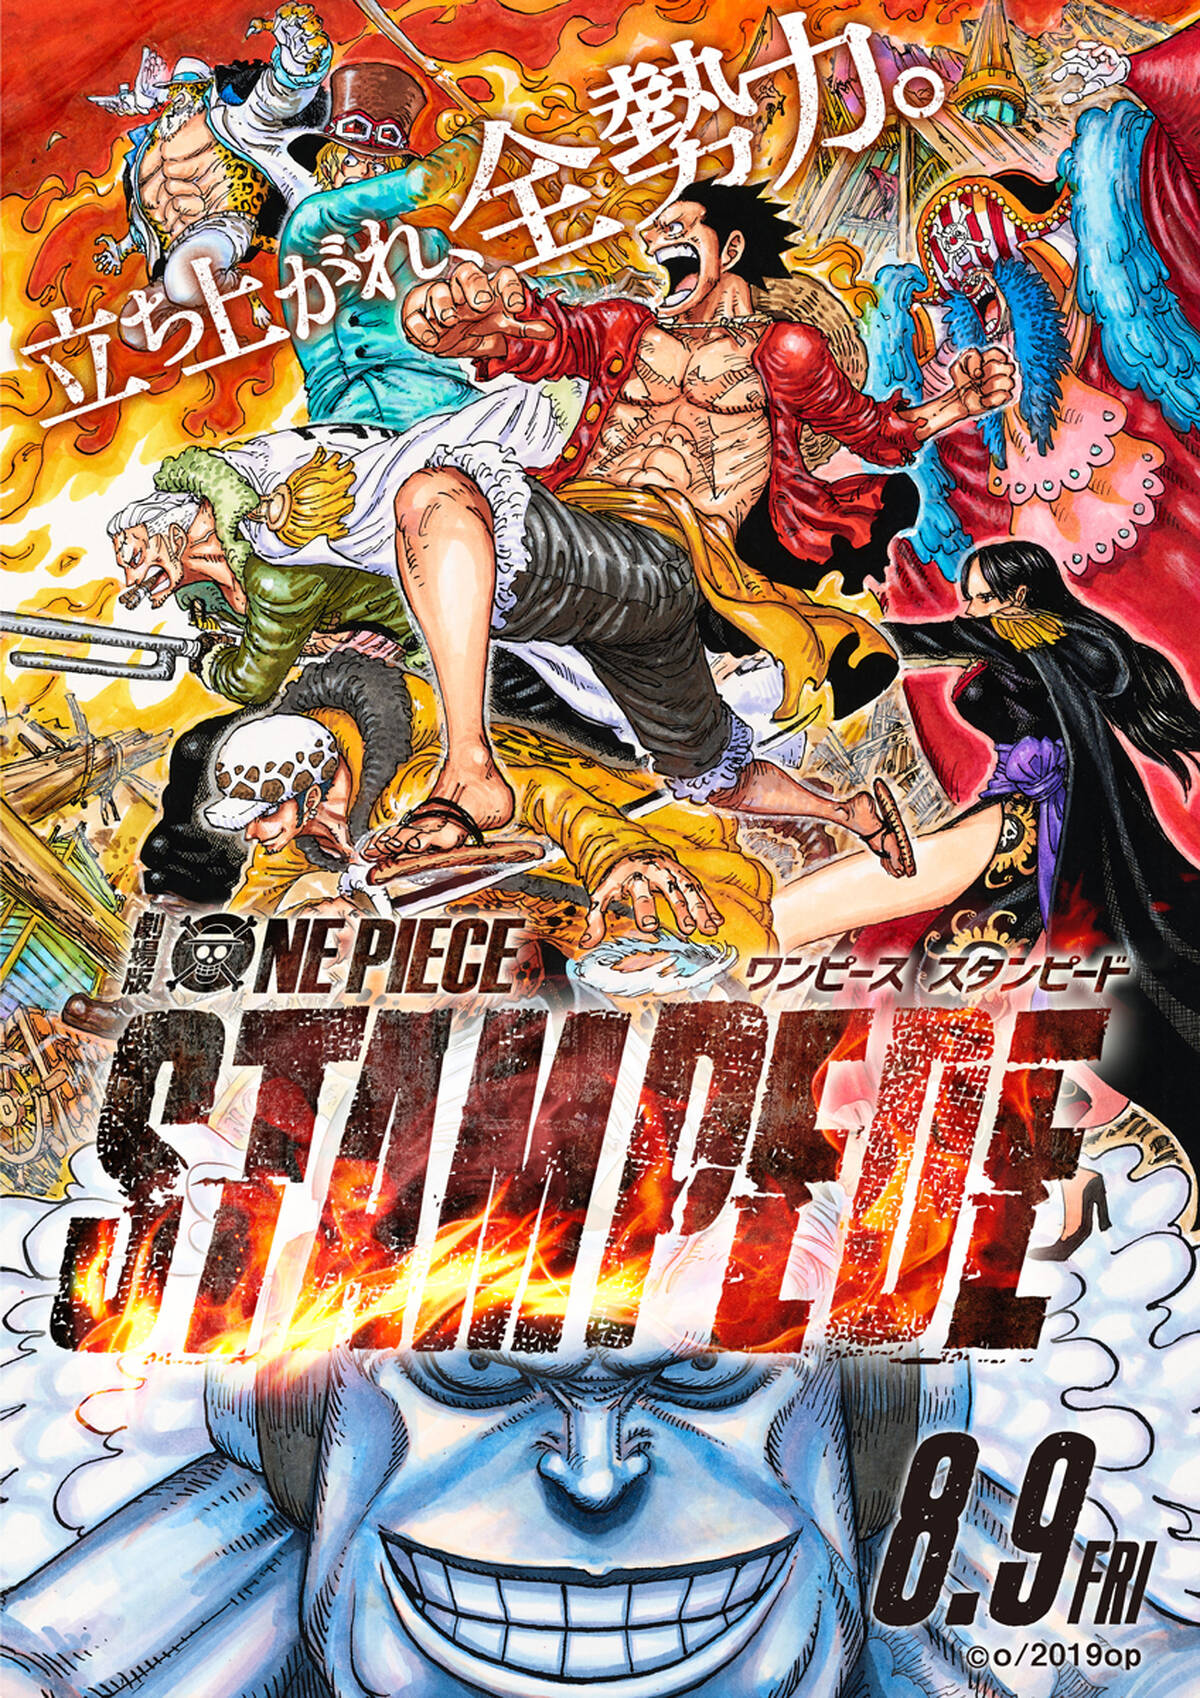 劇場版 One Piece Stampede 絶体絶命のピンチに奇跡の共同戦線発足 熱狂の予告映像が解禁 アキバ総研